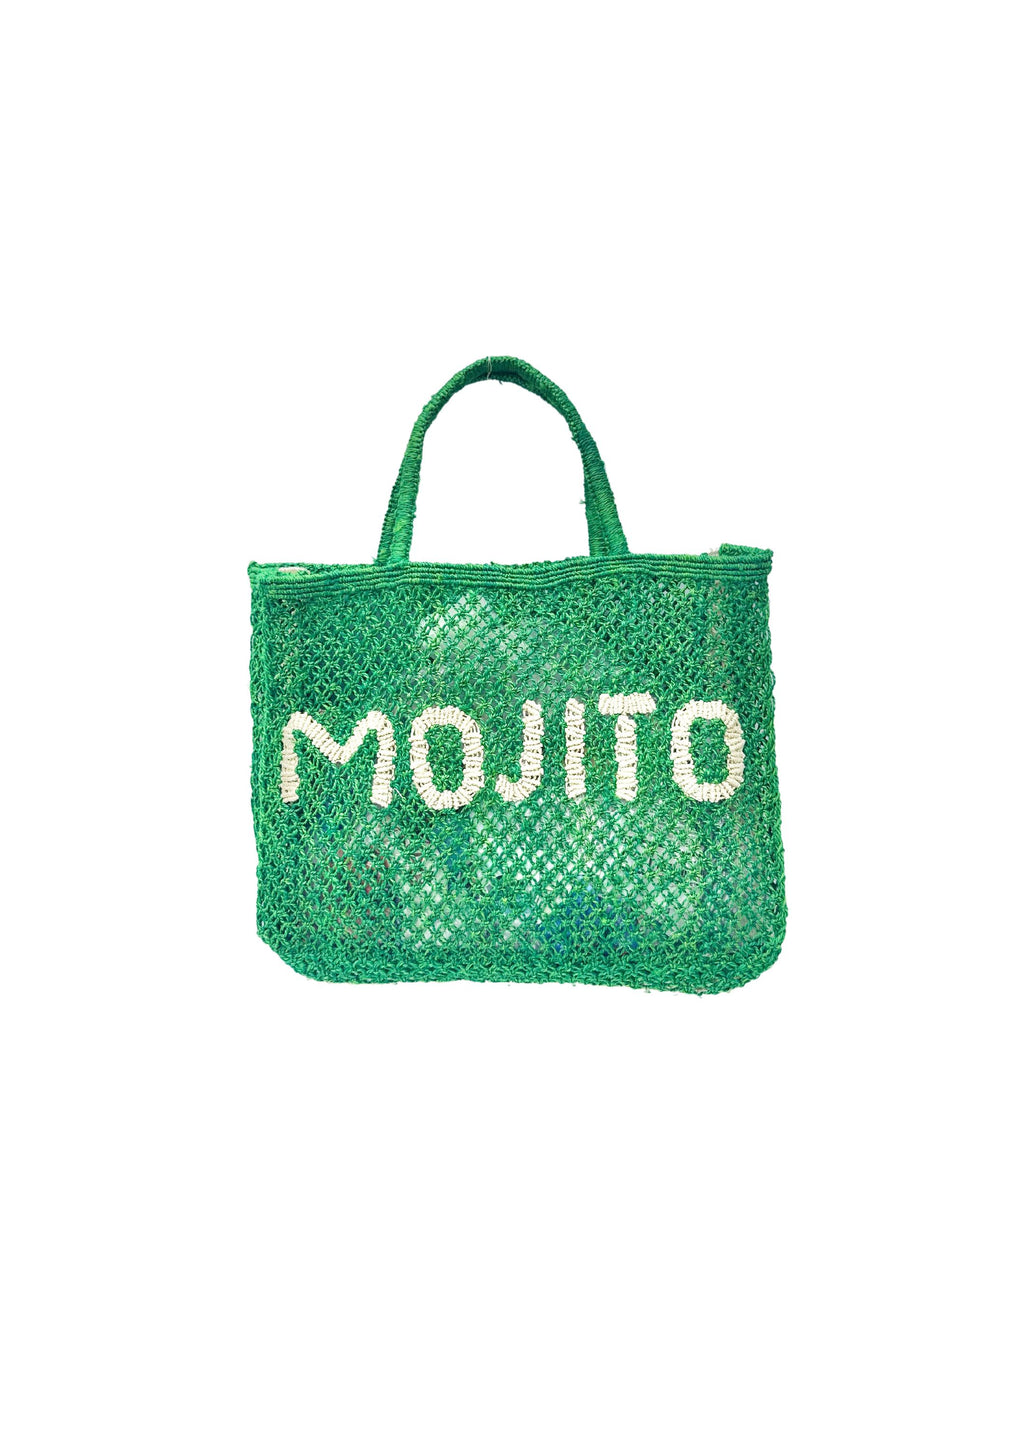 MOJITO BAG SMALL - GREEN / NATURAL - THE JACKSONS